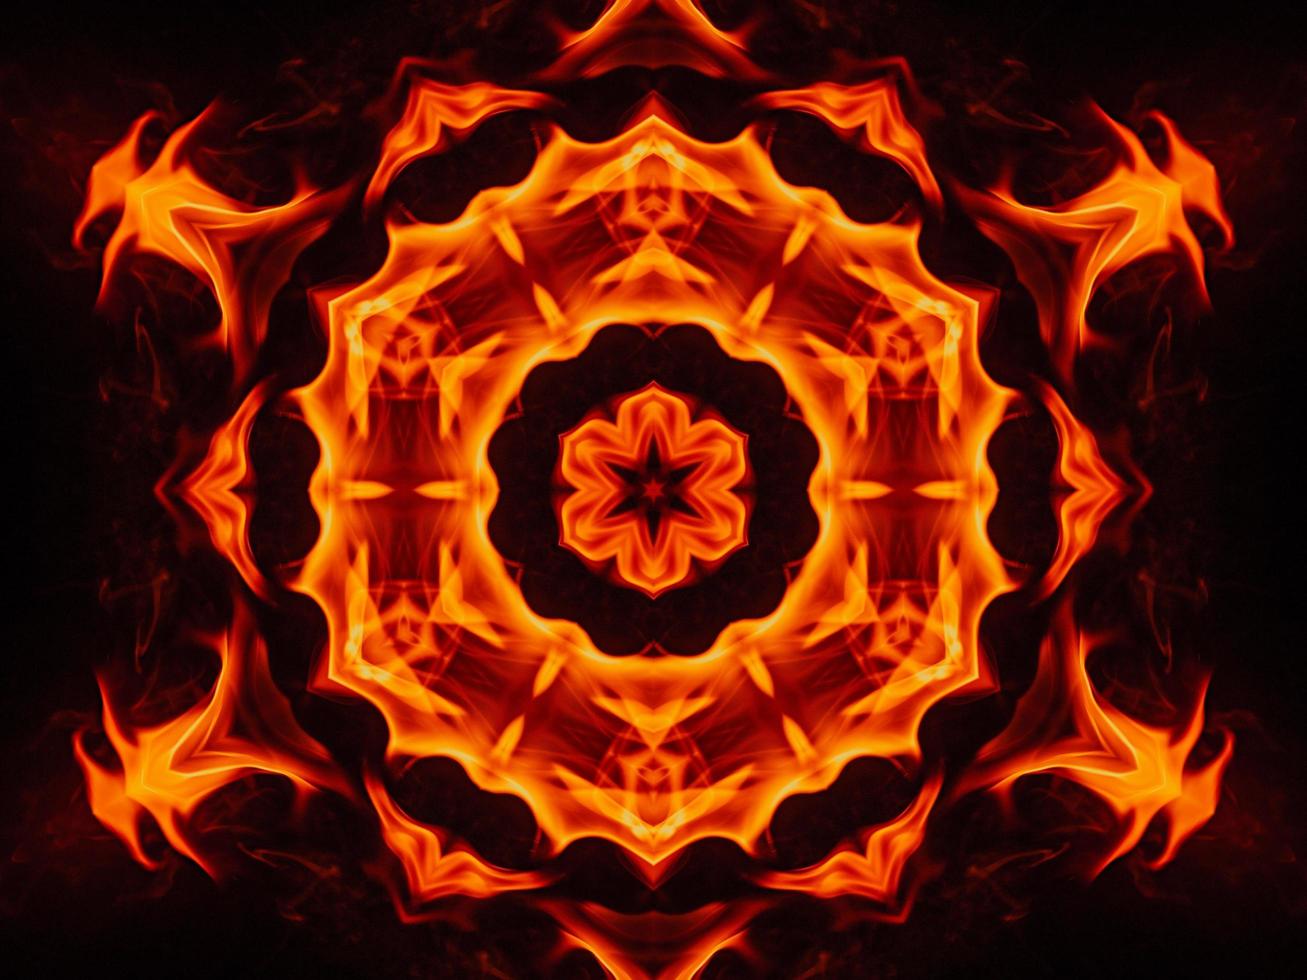 einzigartiger abstrakter hintergrund. orangefarbenes Flammen-Kaleidoskopmuster. kostenloses Foto